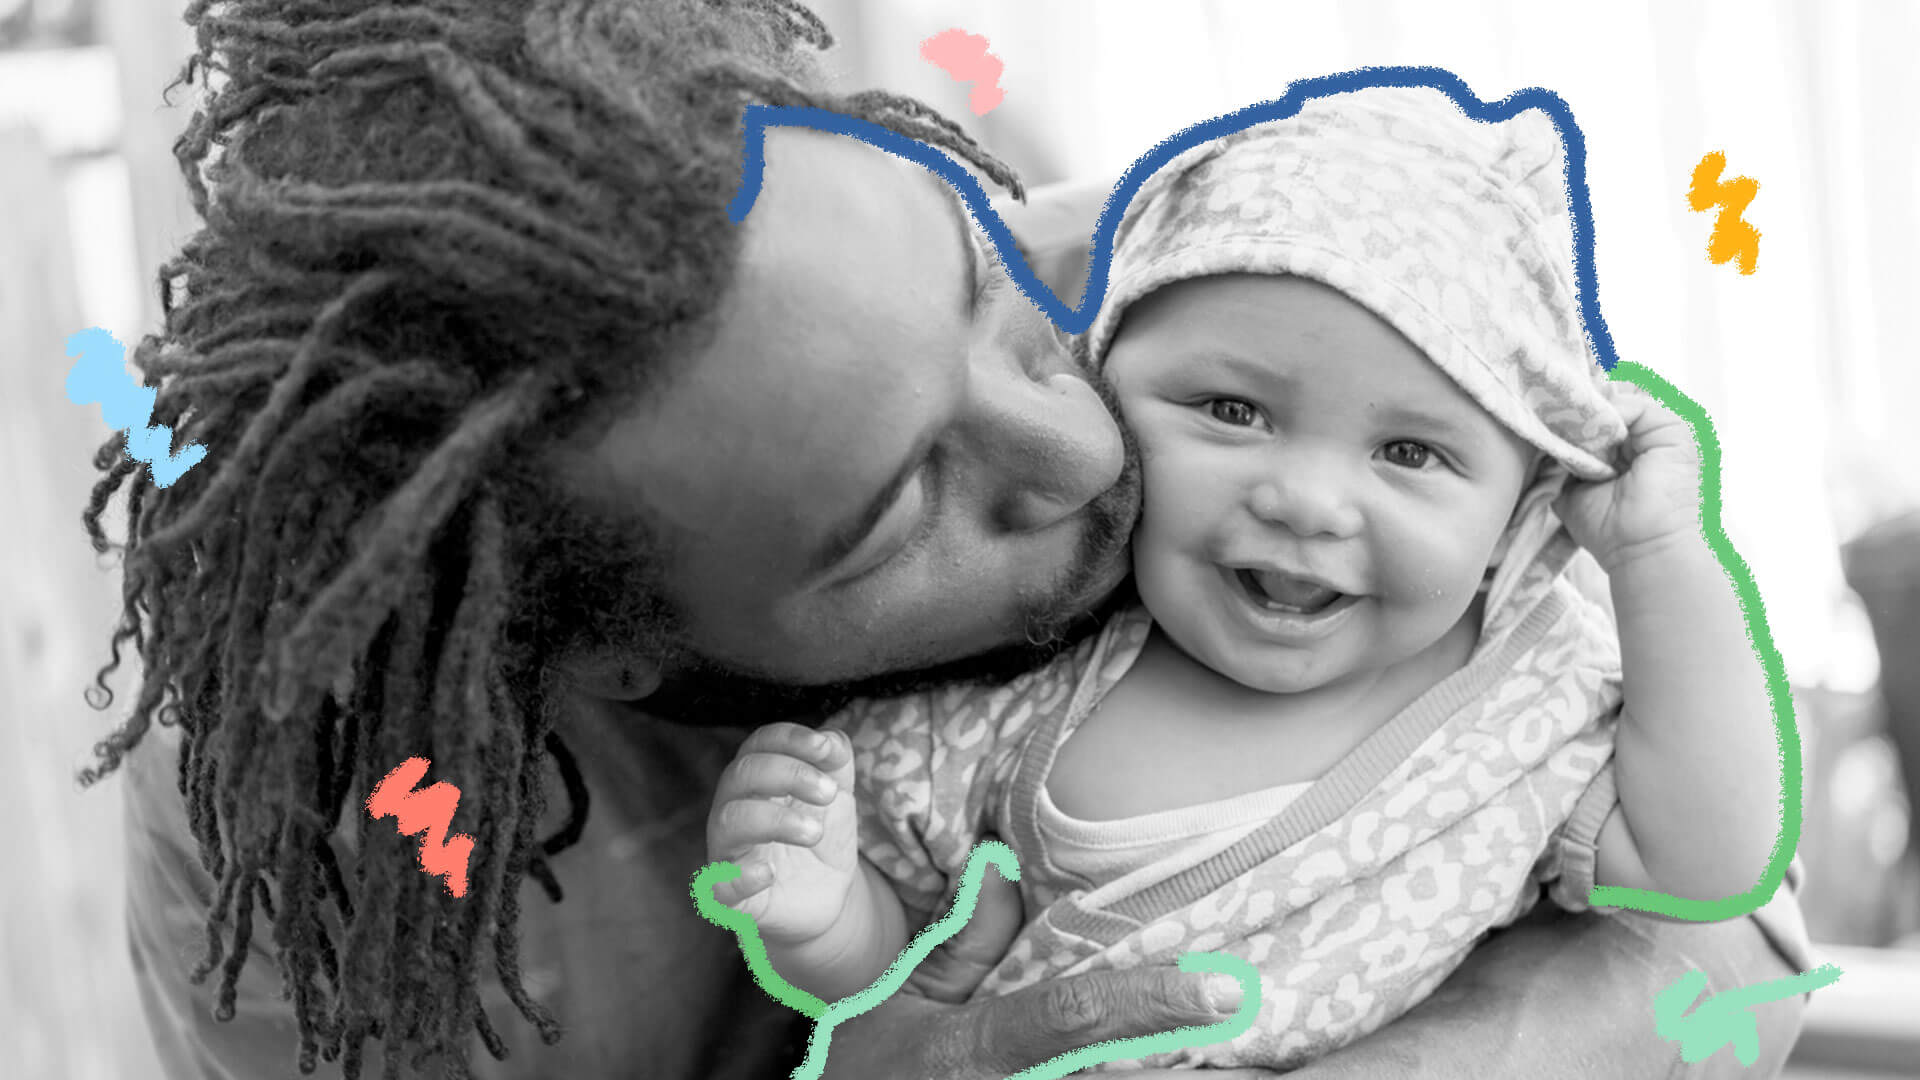 Pai segura um bebê de frente e da um beijo em seu rosto. A foto é em preto e branco.